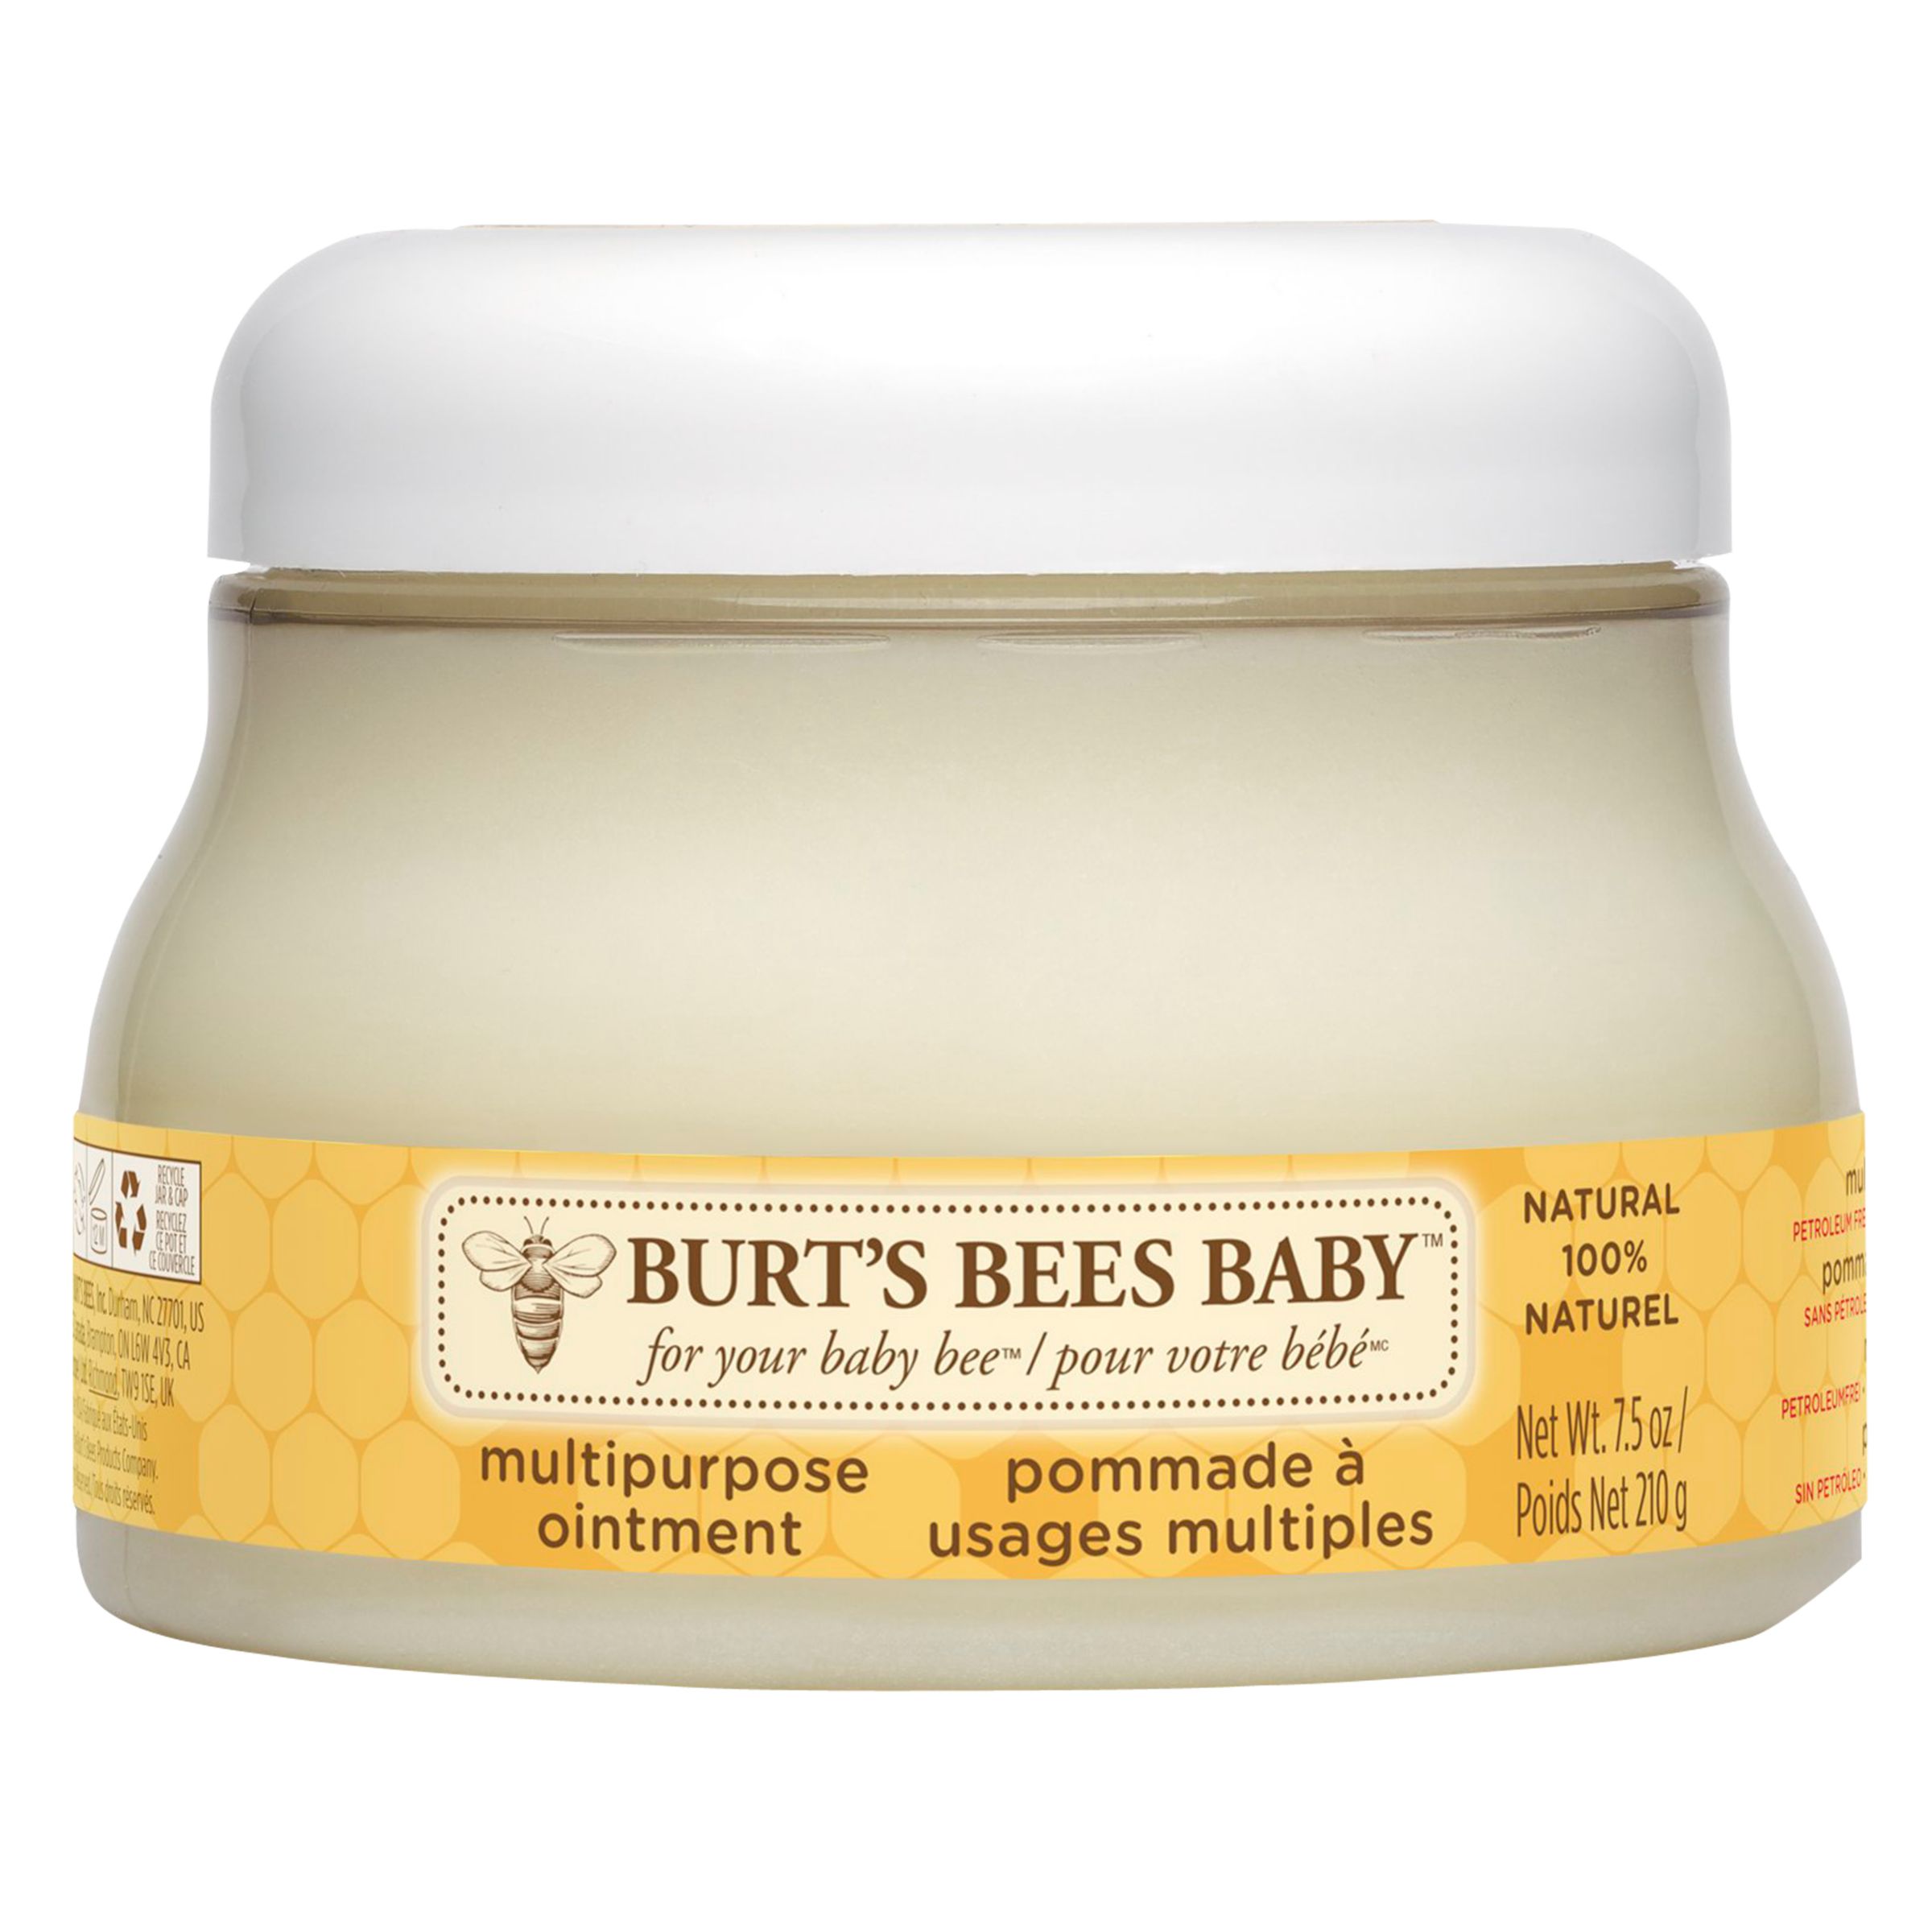 burt's bees baby store